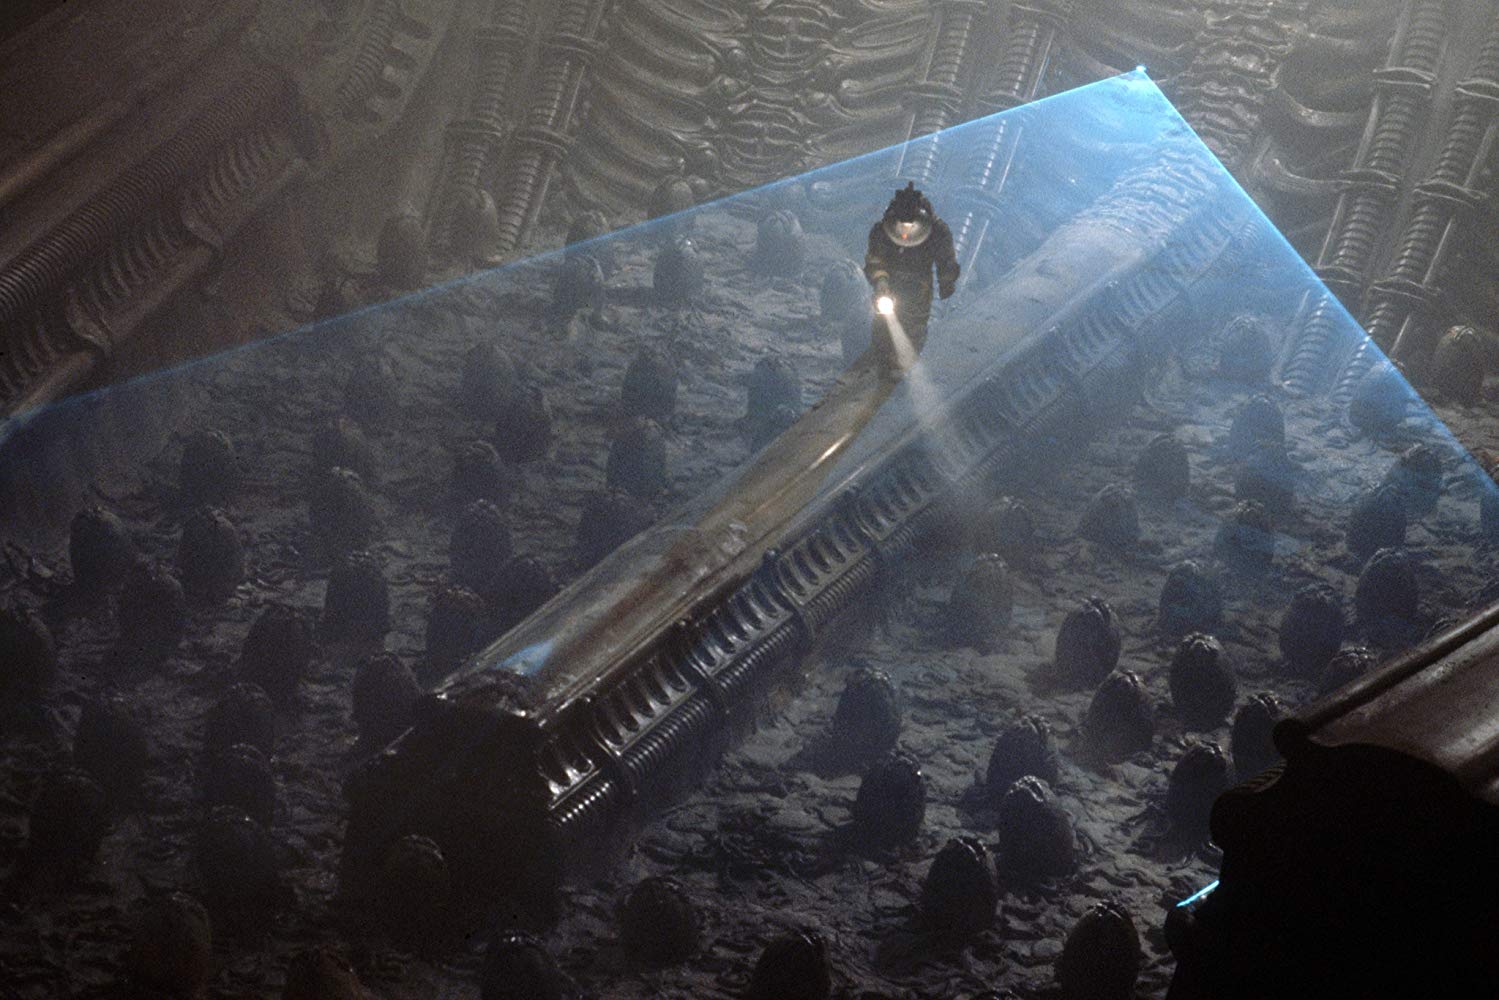 John Hurt in Alien